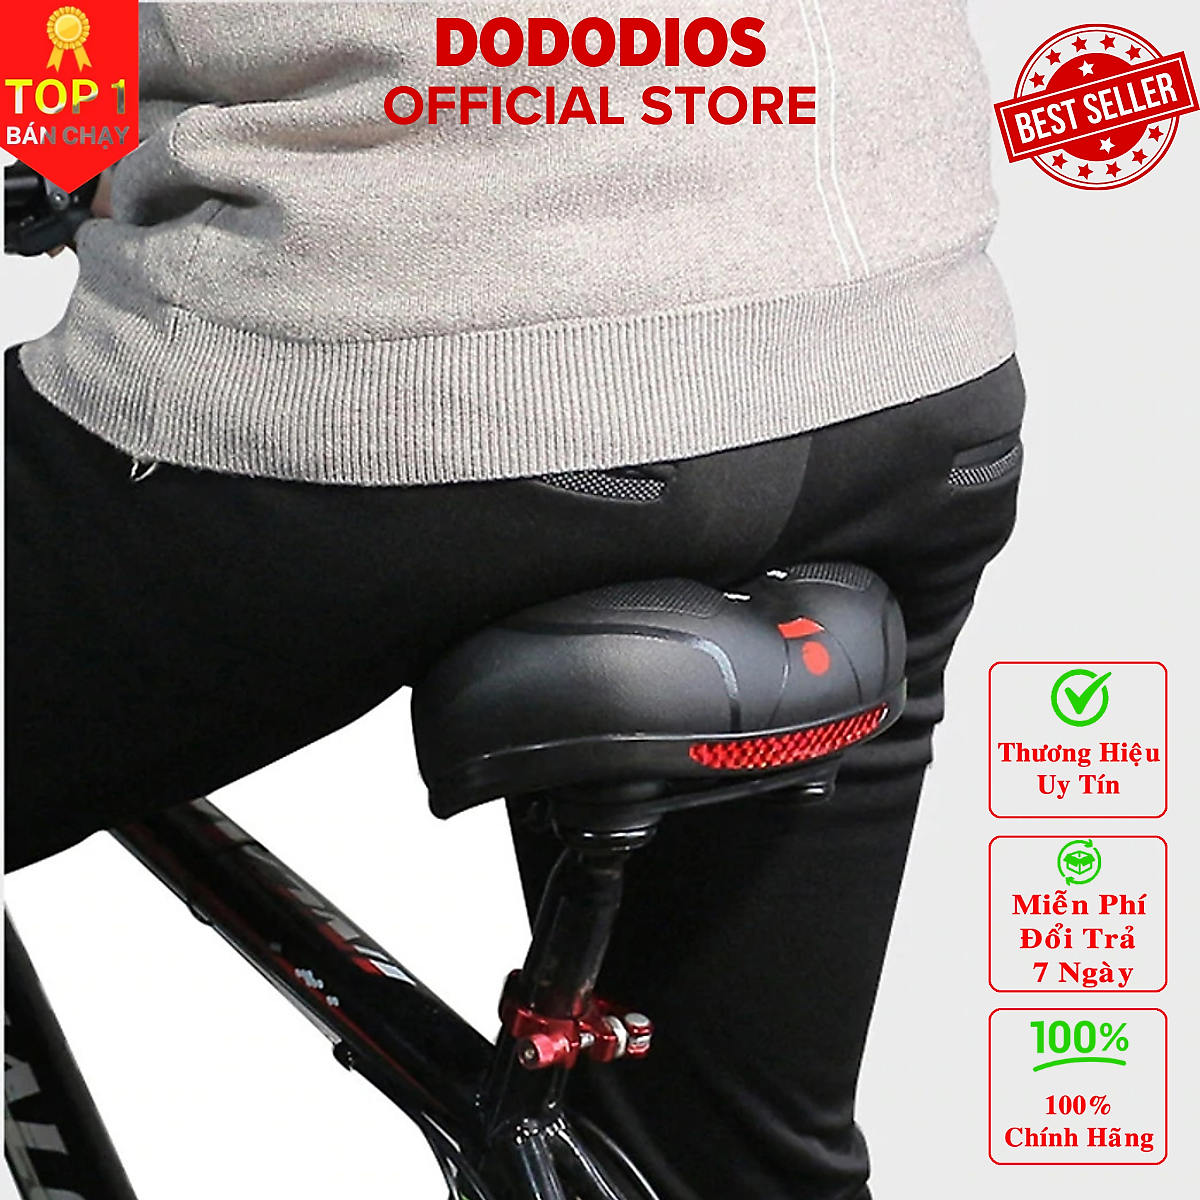 Yên xe đạp địa hình thế hệ mới dododios chống sốc tuyệt đối, êm ái với đệm mút cực đỉnh, thoát khí